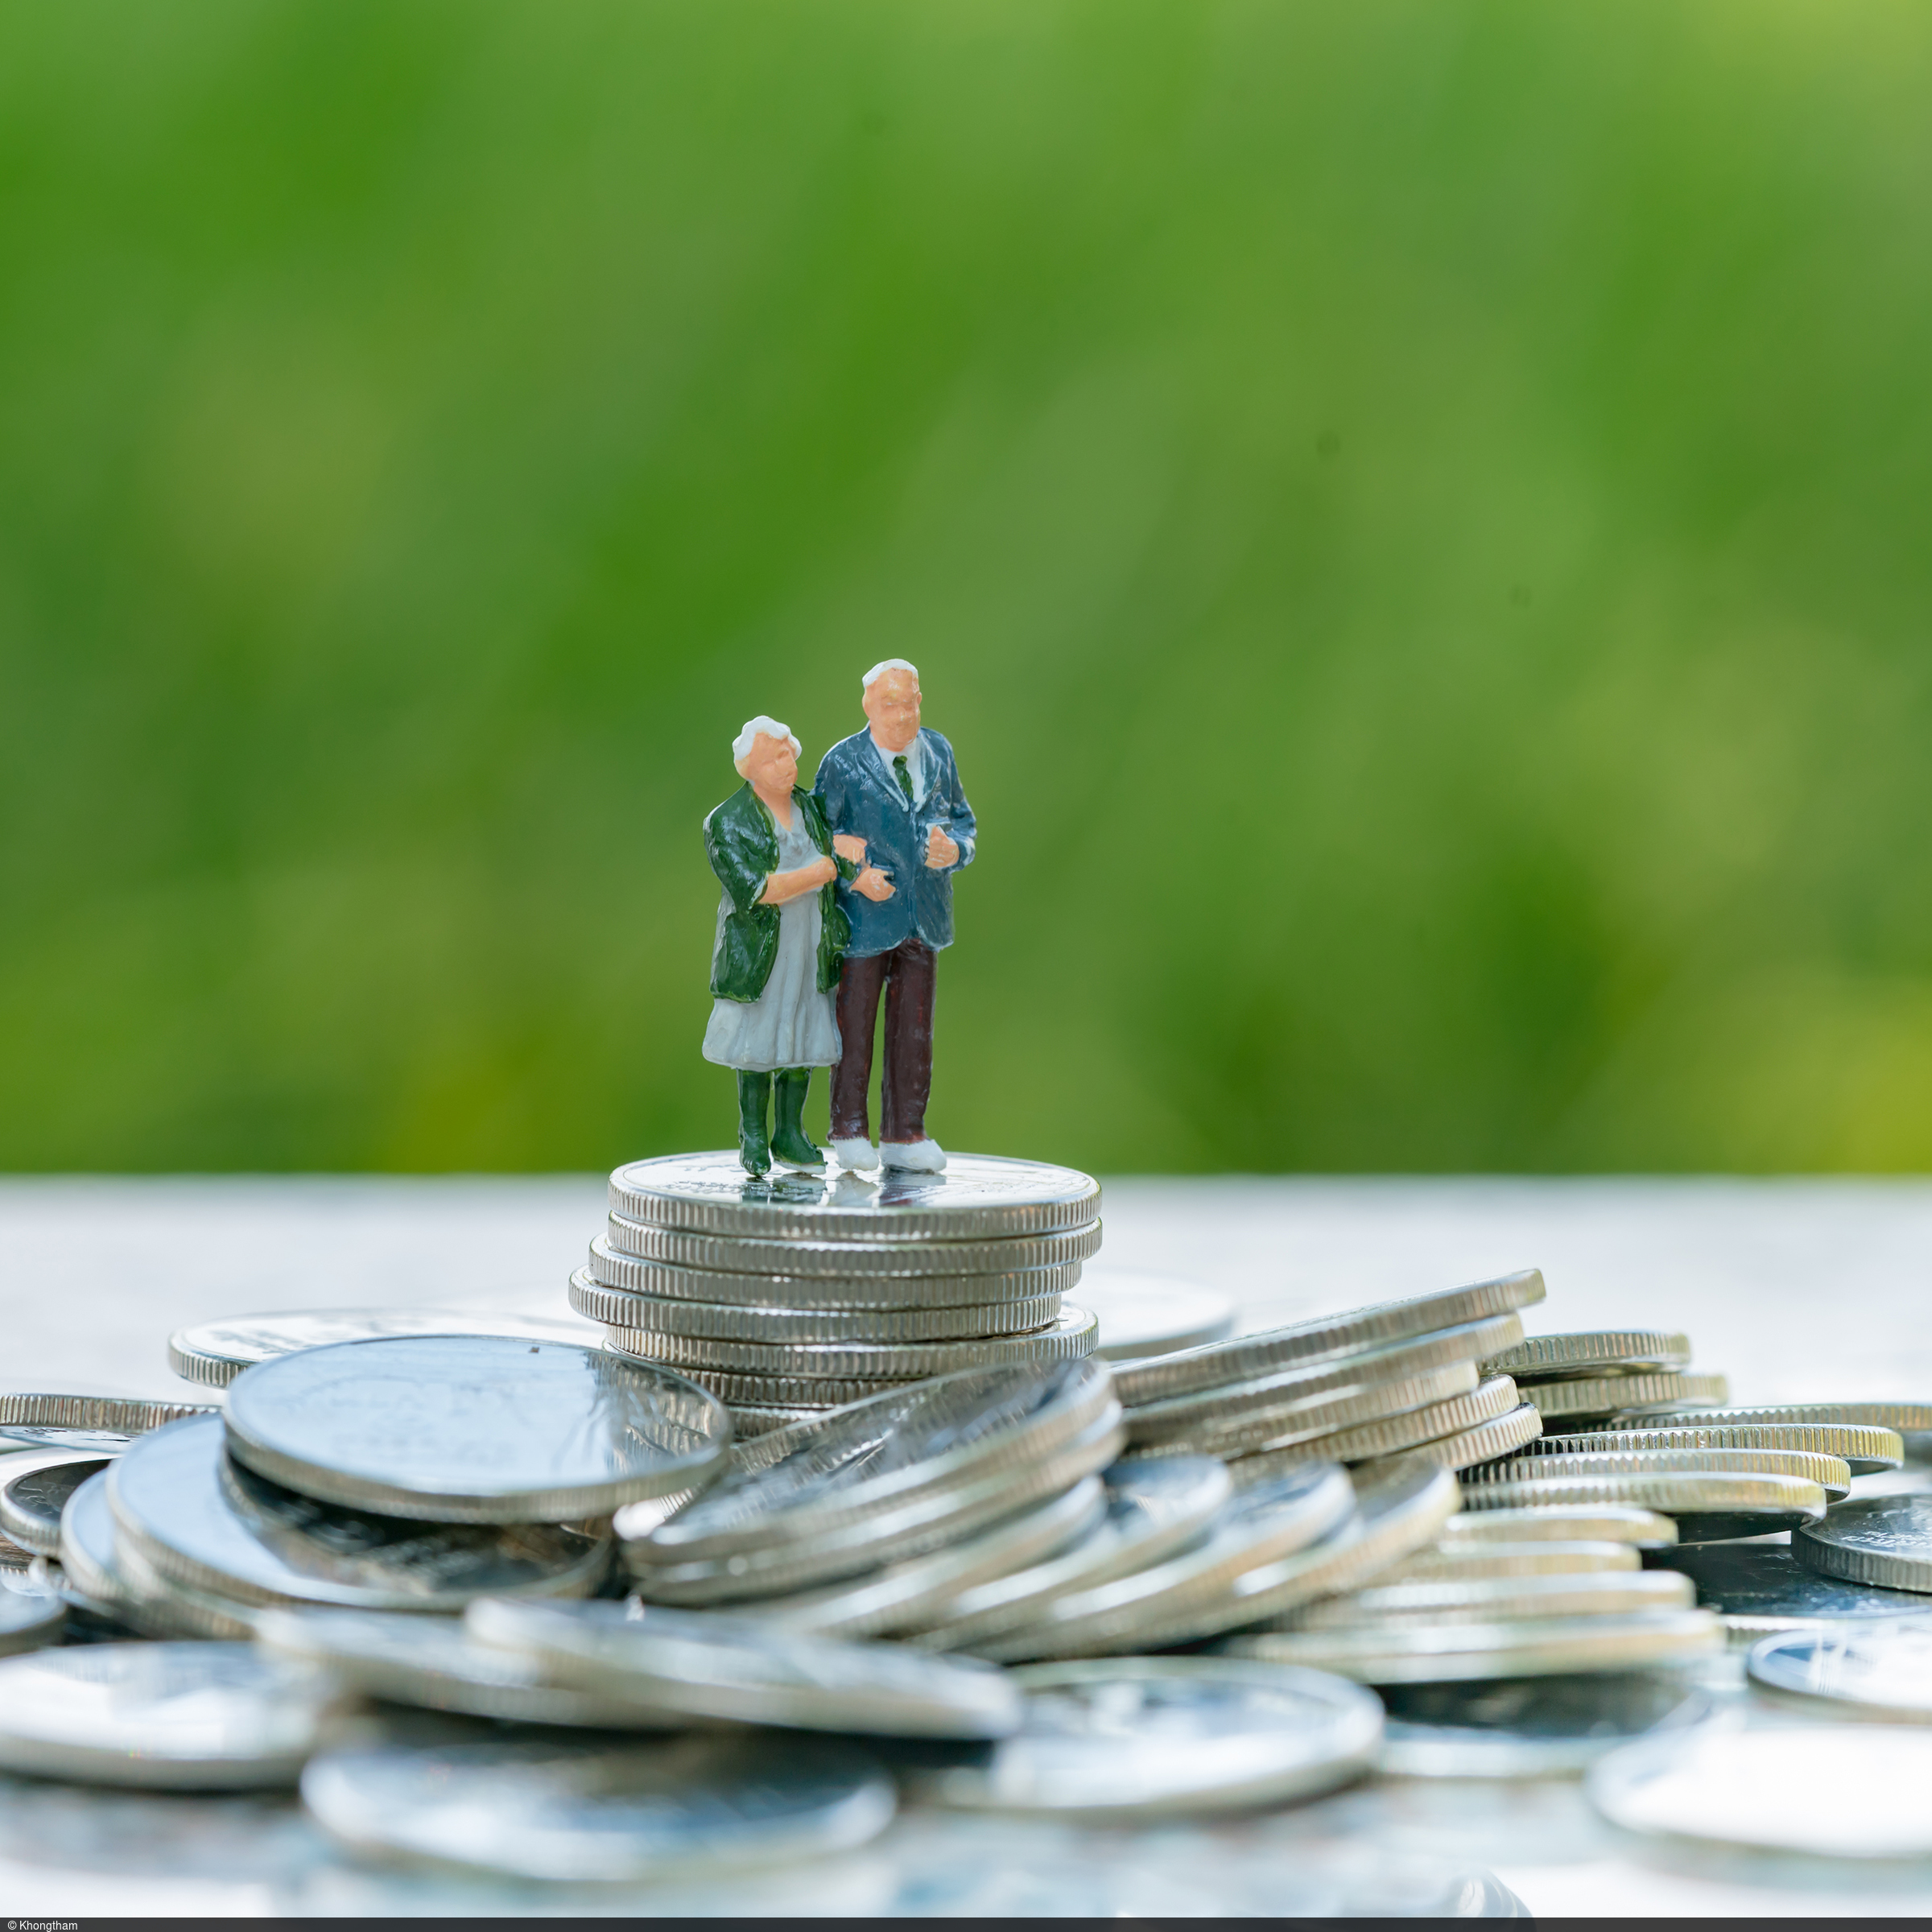 Ein älteres Ehepaar steht vor grünem Hintergrund auf überdimensional großen Münzen